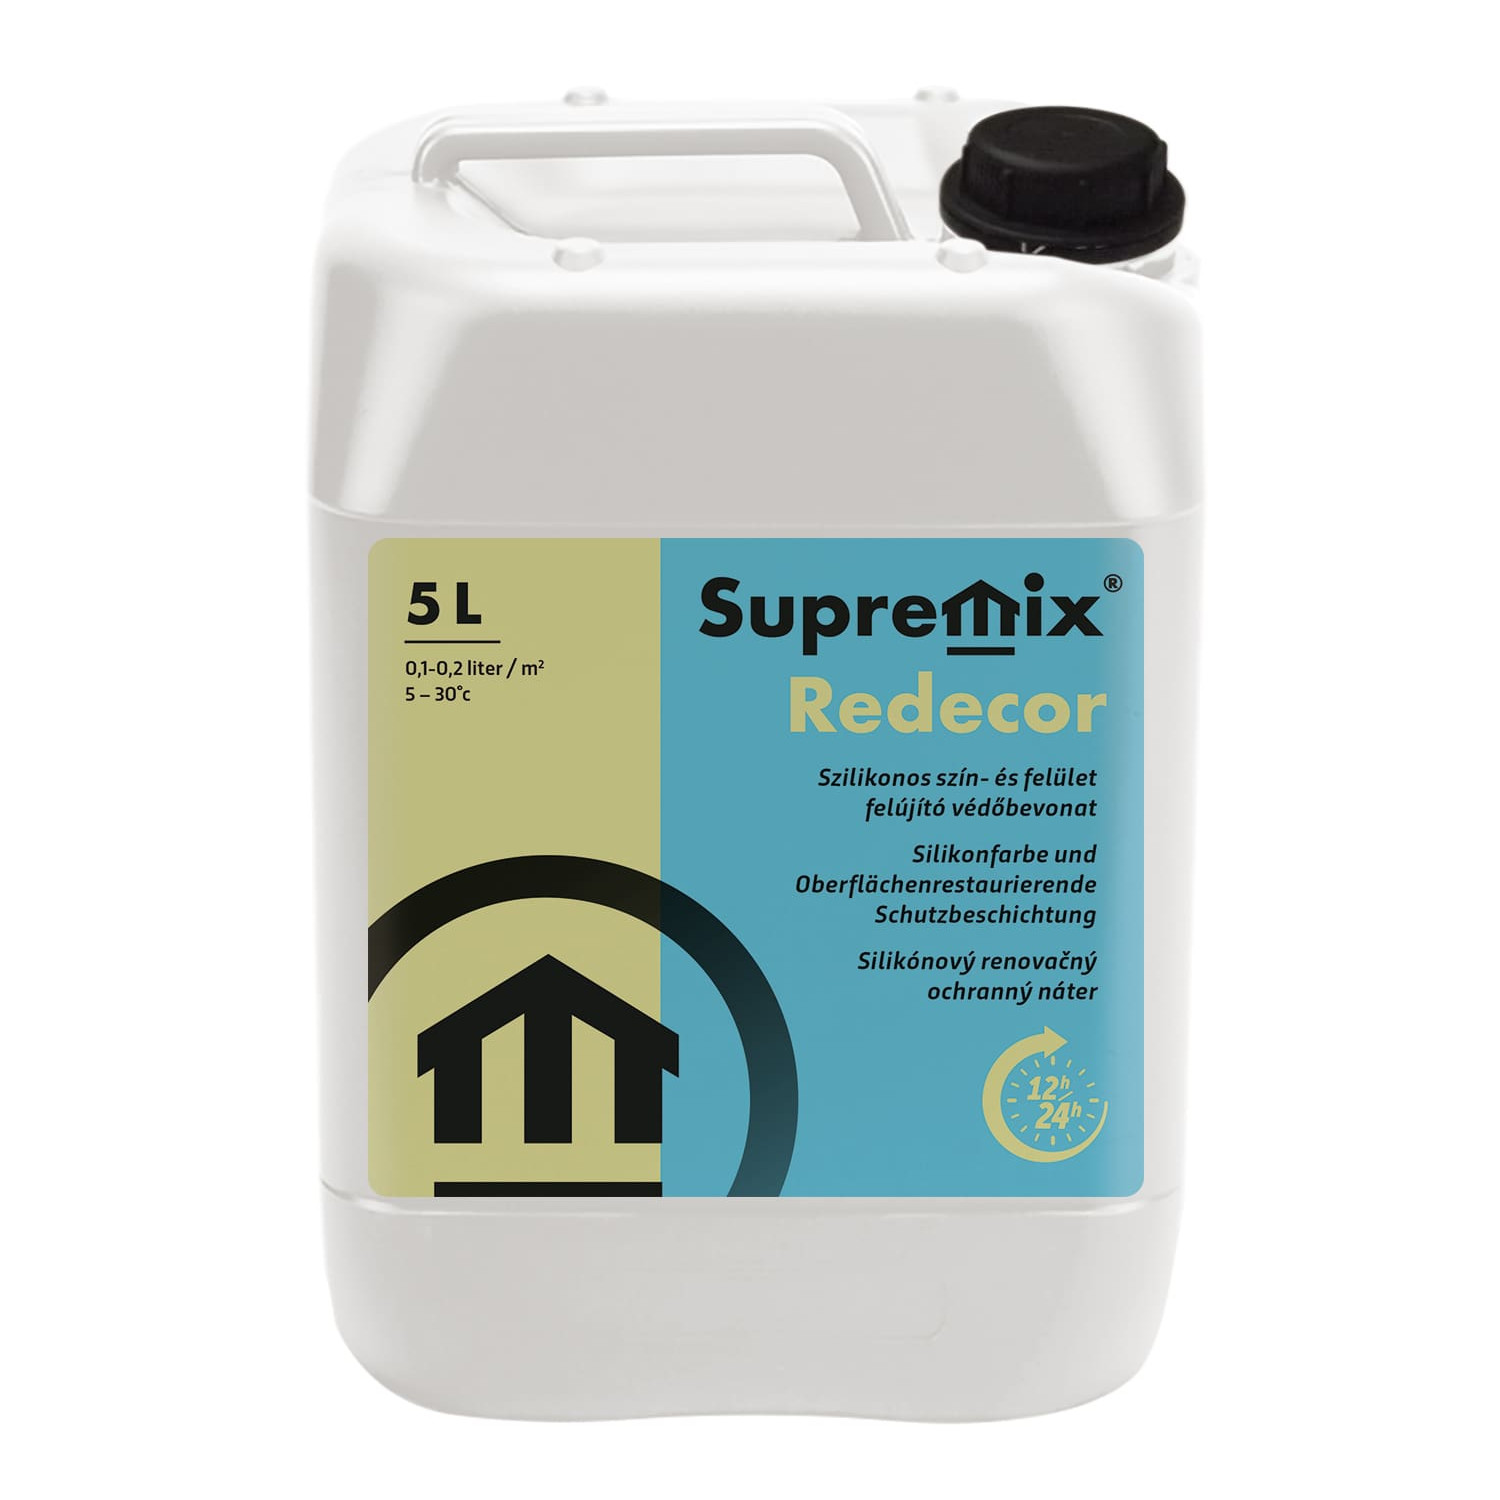 Supermix Redecor szilikonos szín- és felületújító védőbevonat